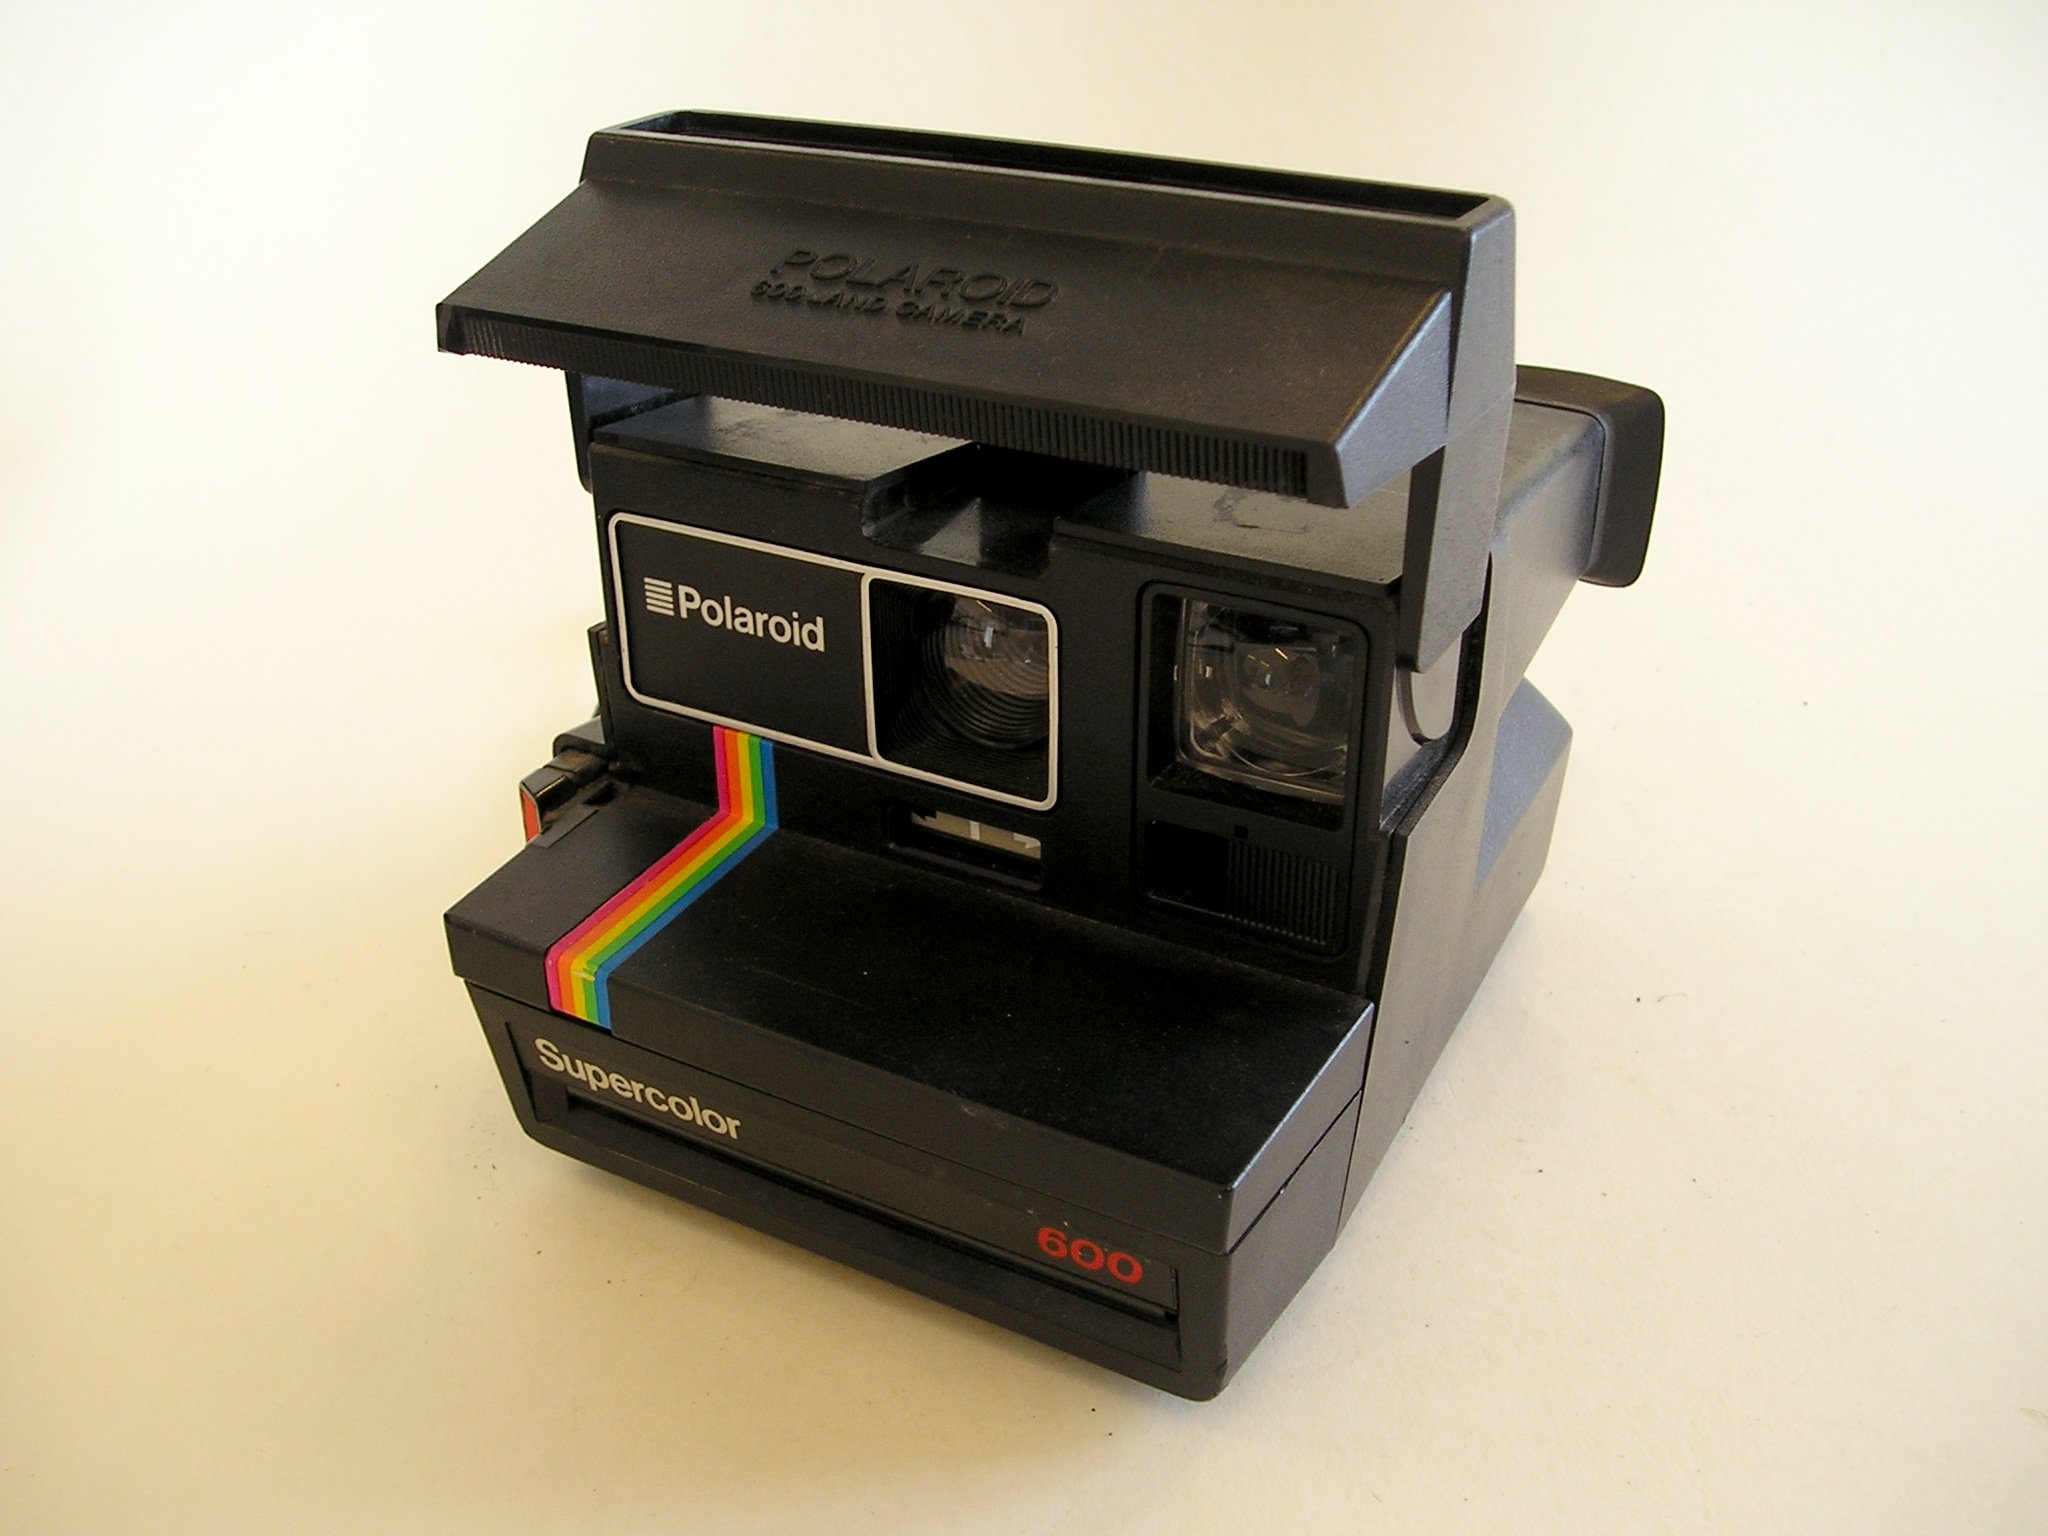 Polaroid Supercolor 600